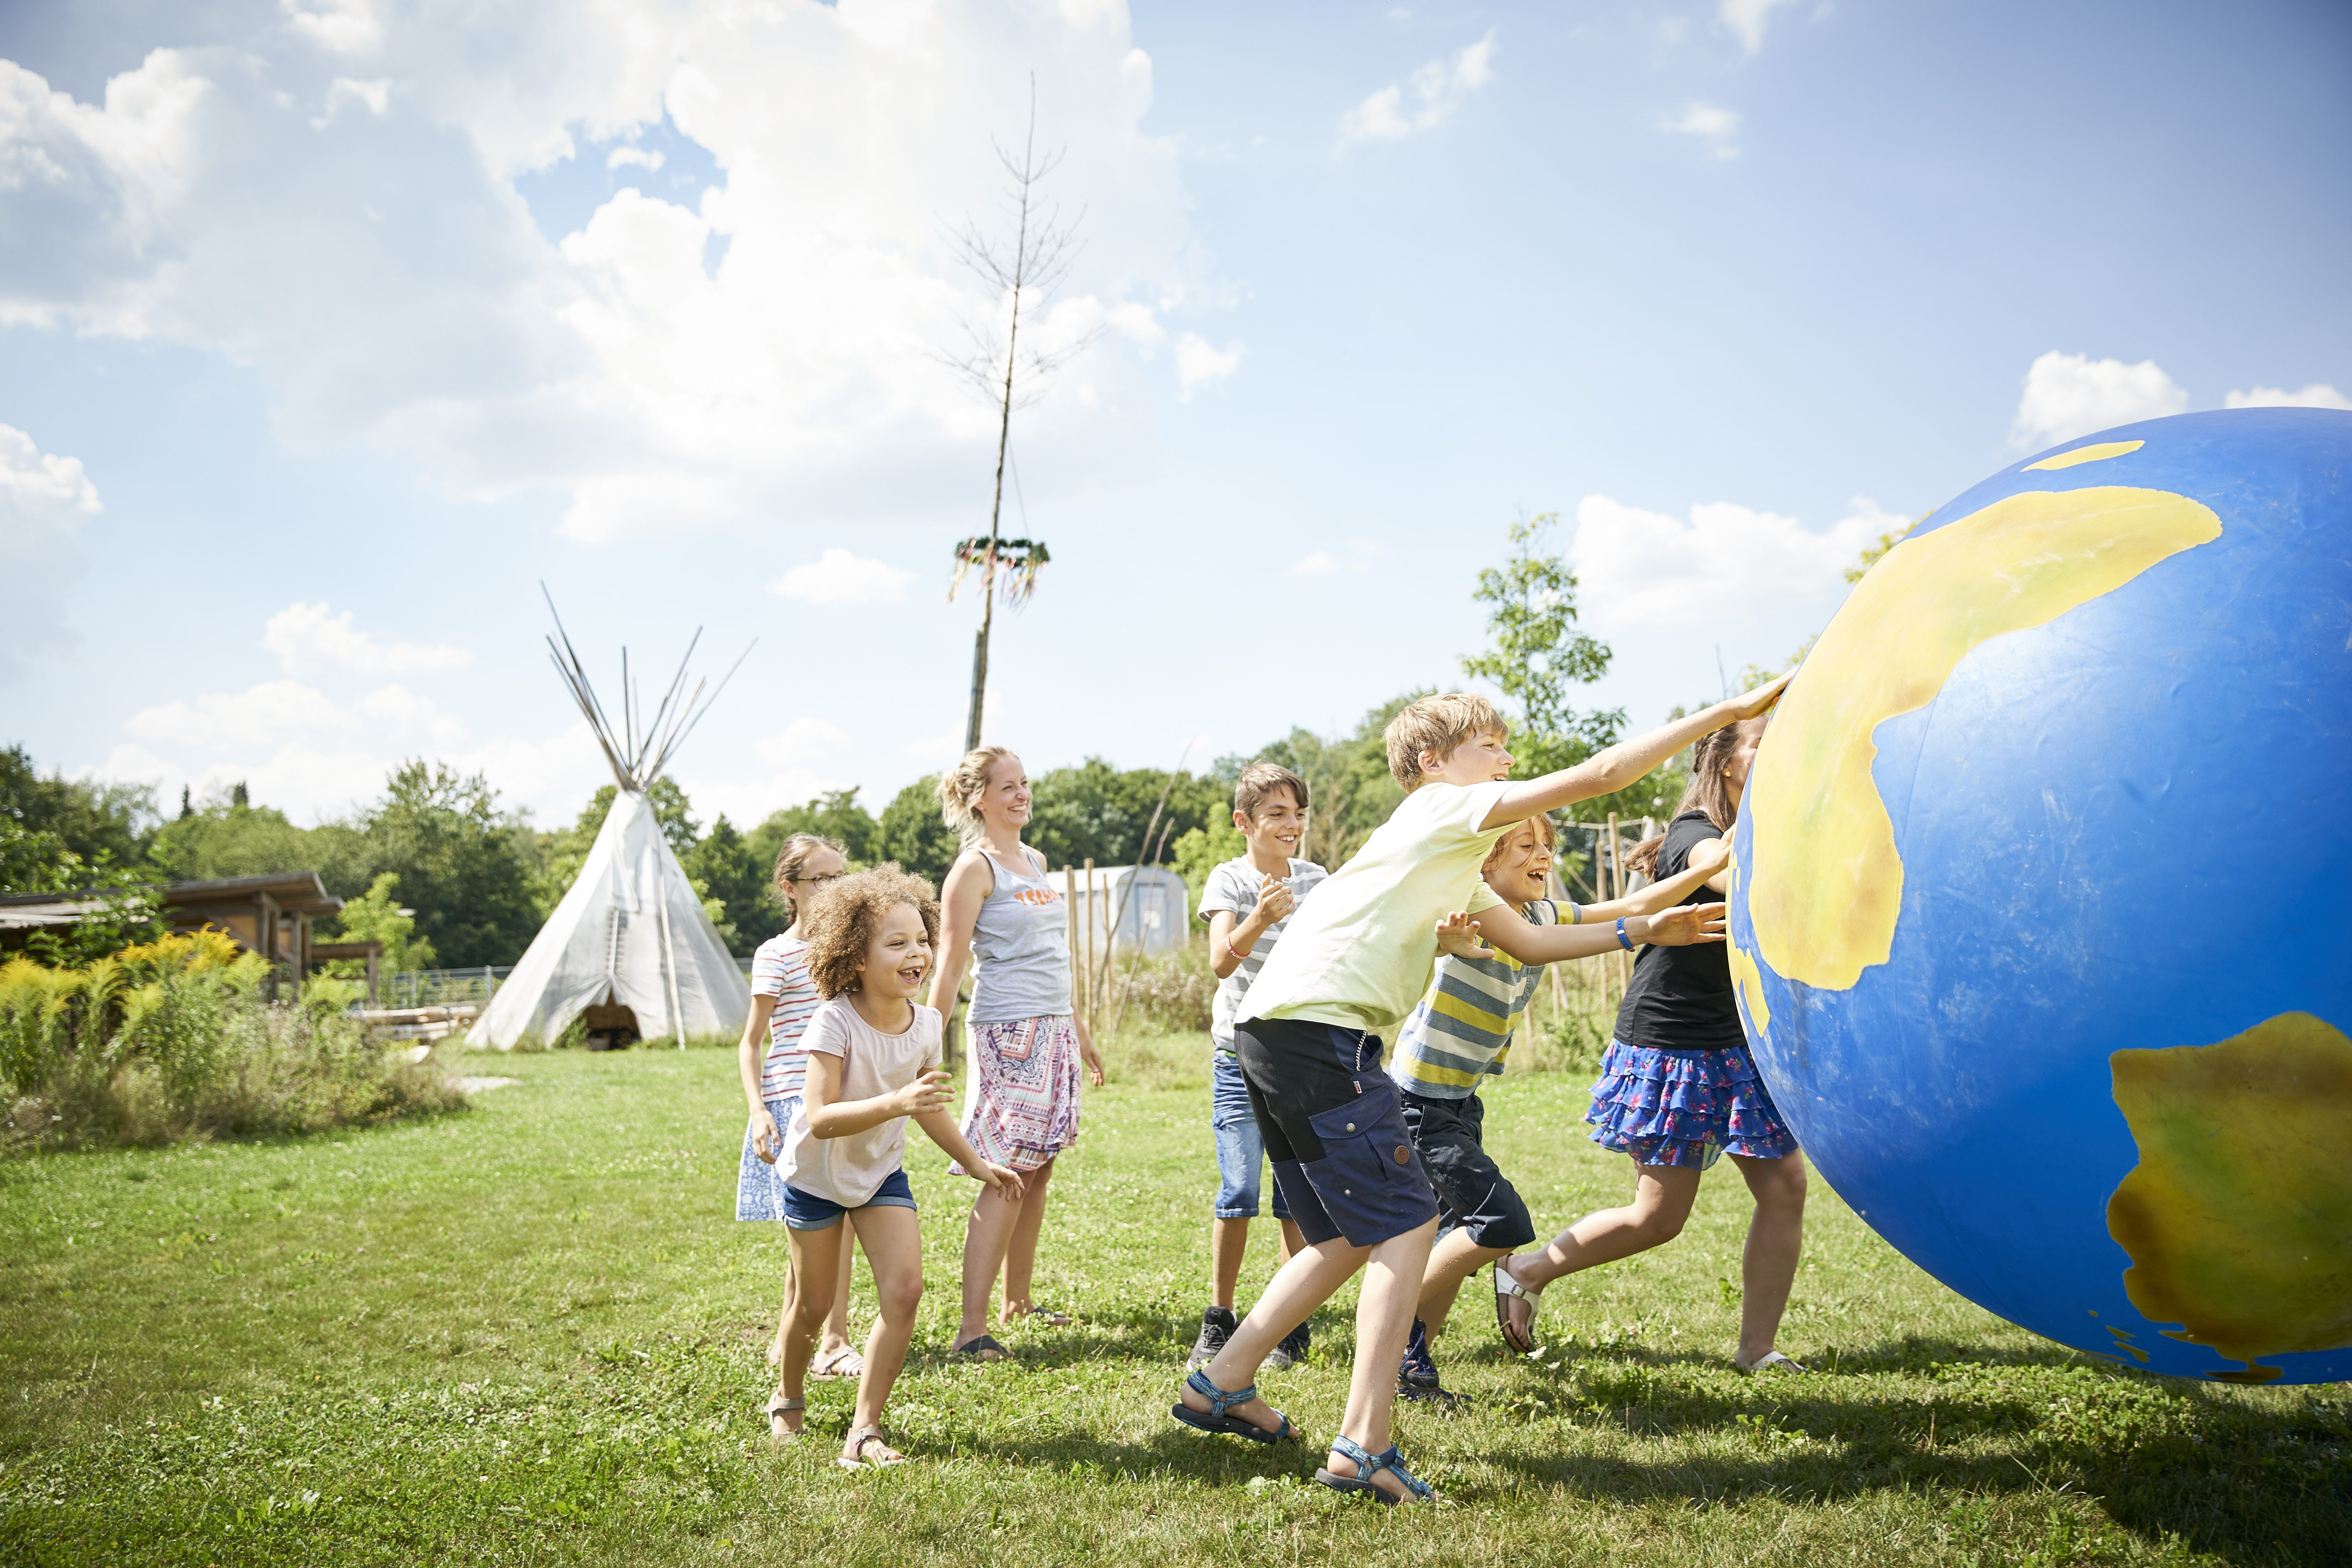 Sechs Kinder und Jugendliche rollen eine etwa zwei Meter große Weltkugel über eine Wiese. Im Hintergrund ist ein Indianer-Zelt zu sehen. 